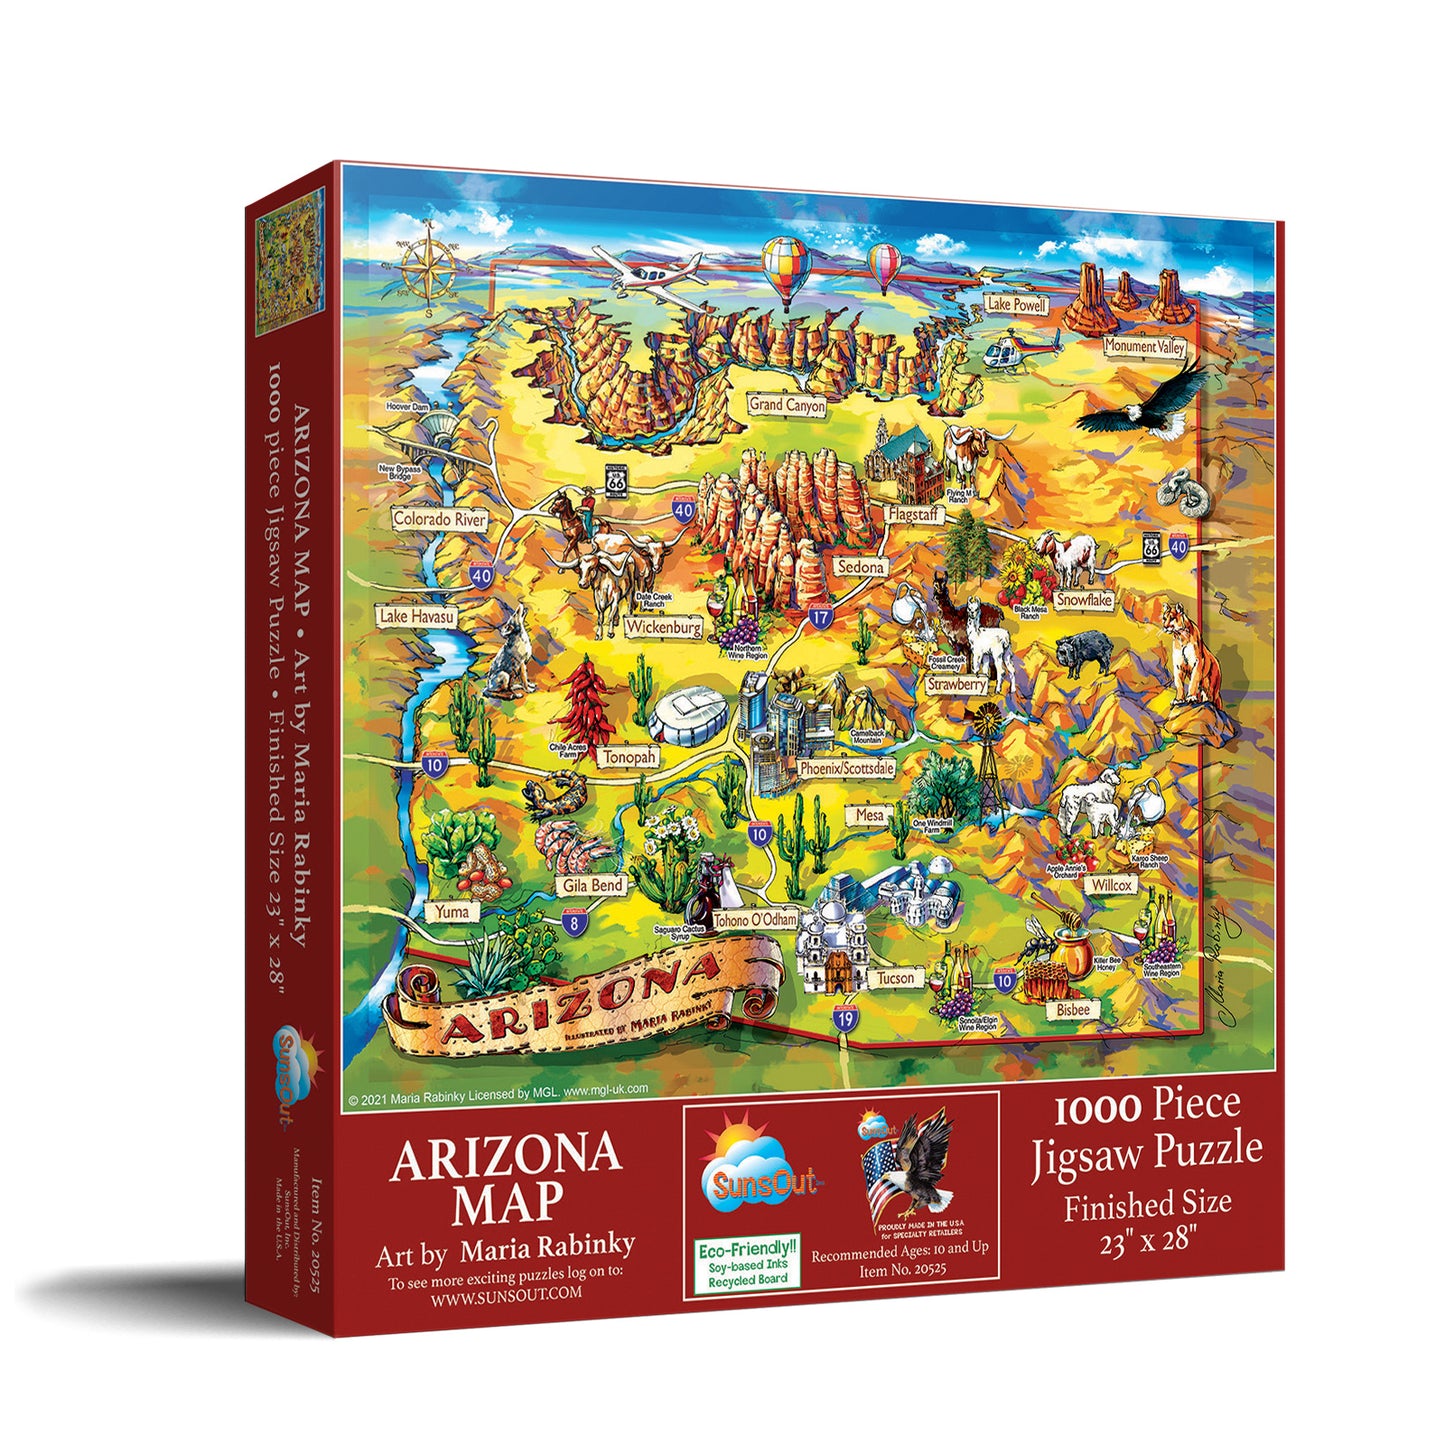 Arizona Map - 1000 Piece Jigsaw Puzzle